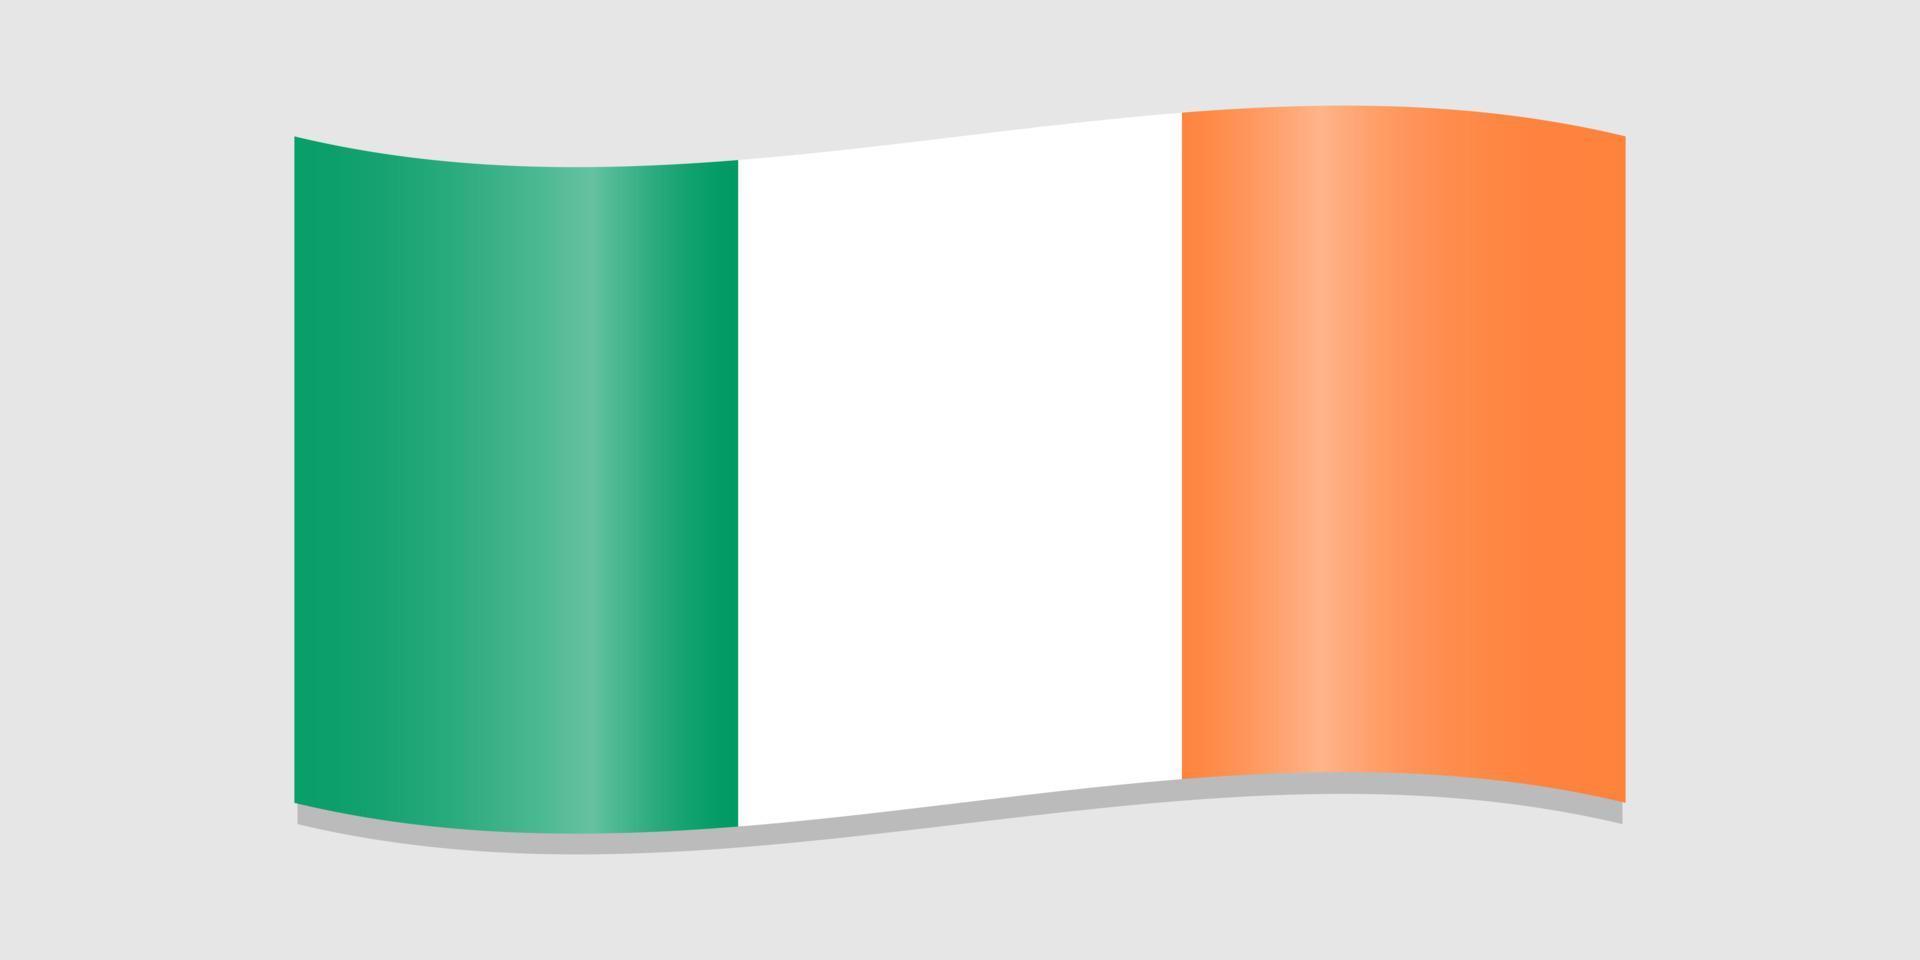 Flagge von Irland. irisch Flagge mit Schatten auf ein Licht grau Hintergrund. Grün, Weiss, Orange Farben. Vektor Illustration.